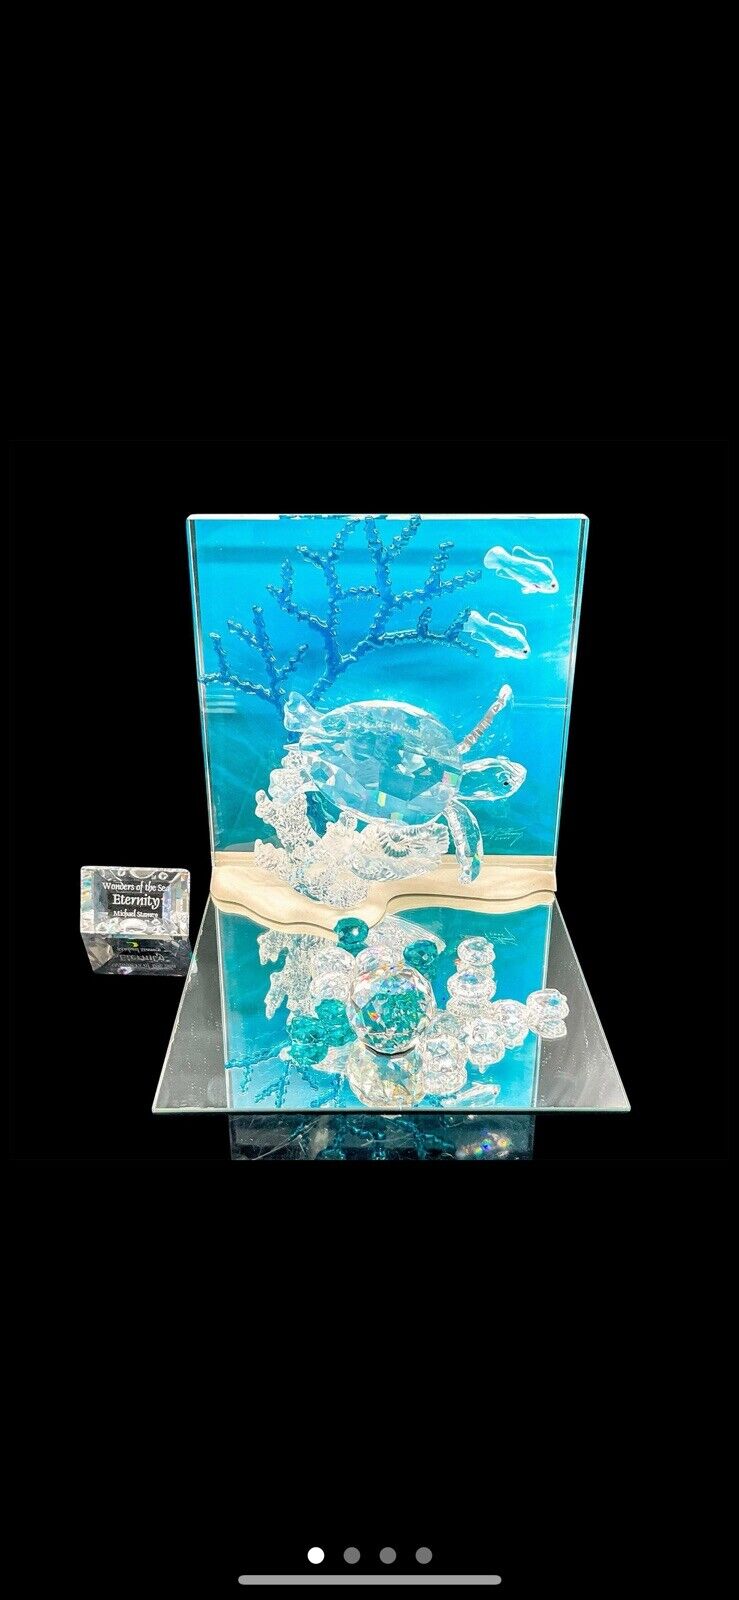 Swarovski Crystal Wonders of the Sea Eternity Turtle Figurine Colored